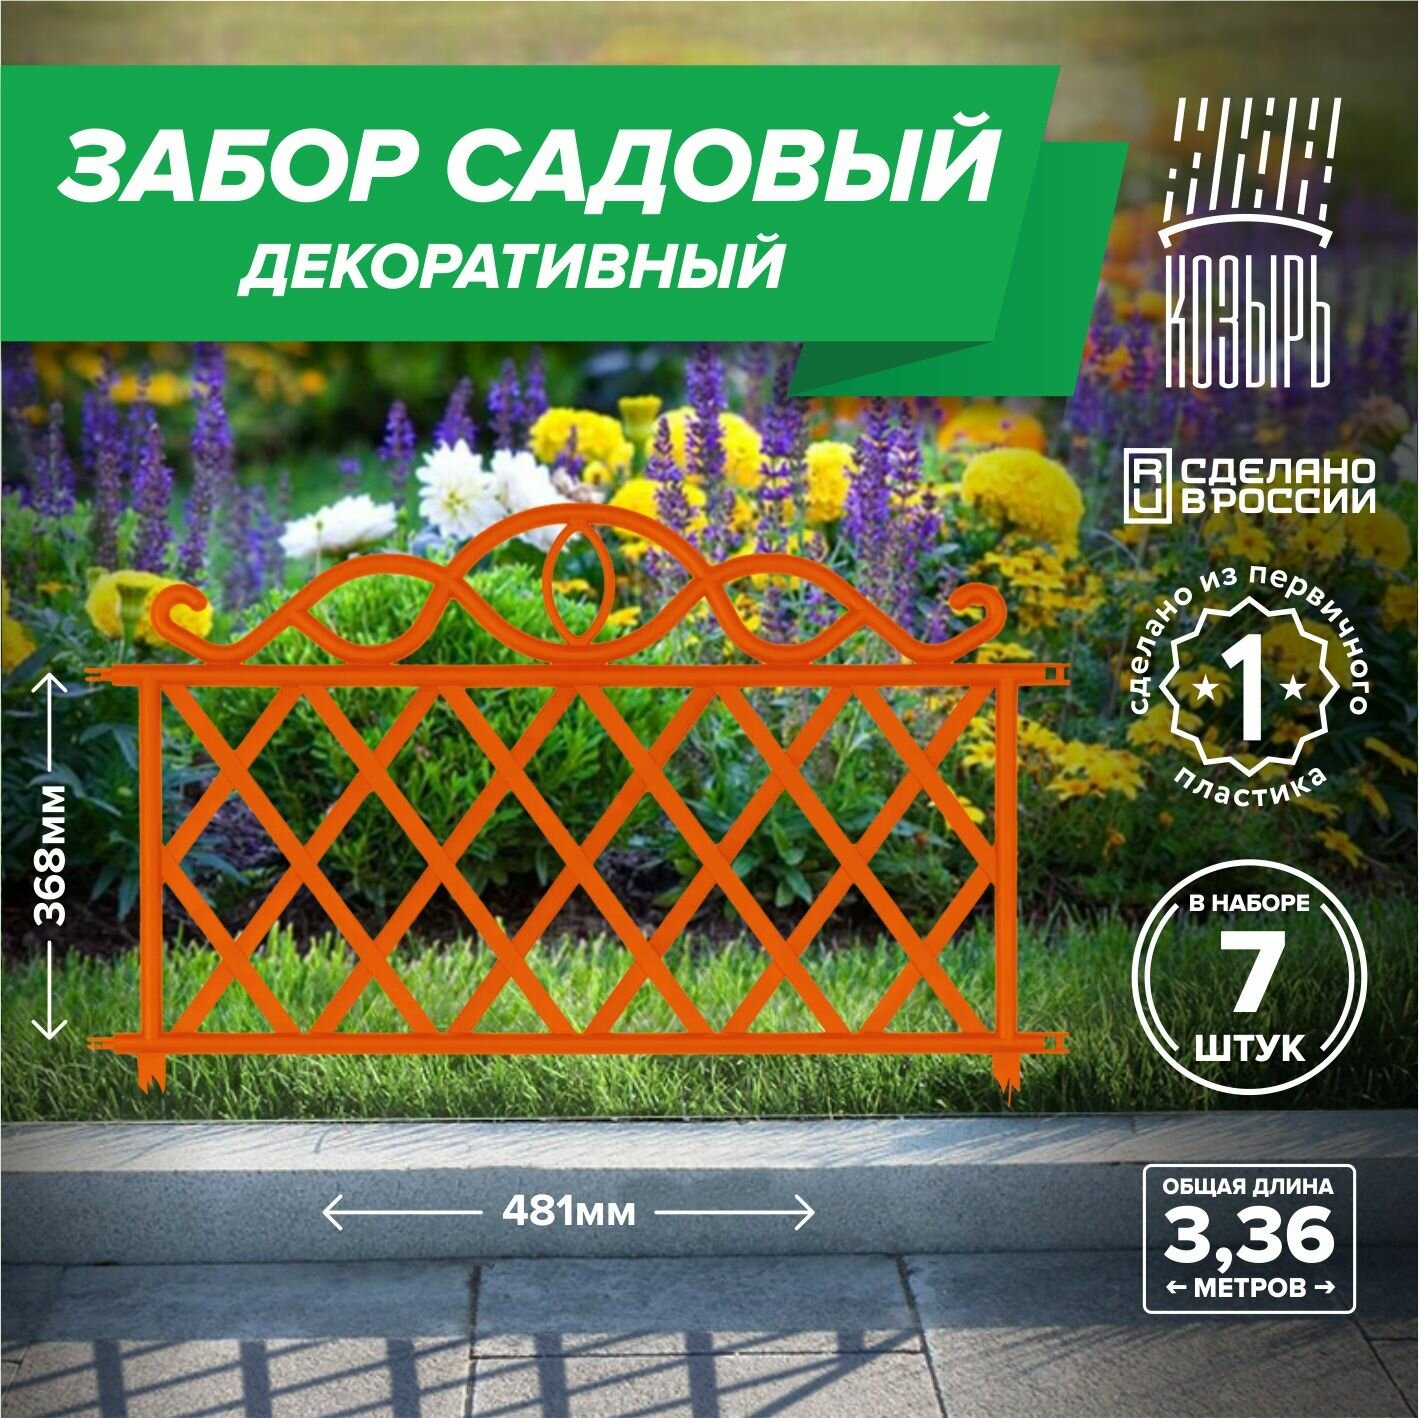 Декоративный садовый забор 48,1см х 7 шт, общая длина: 3,37 м, ограждение для цветника и клумбы, для дачи и сада оранжевый, Россия